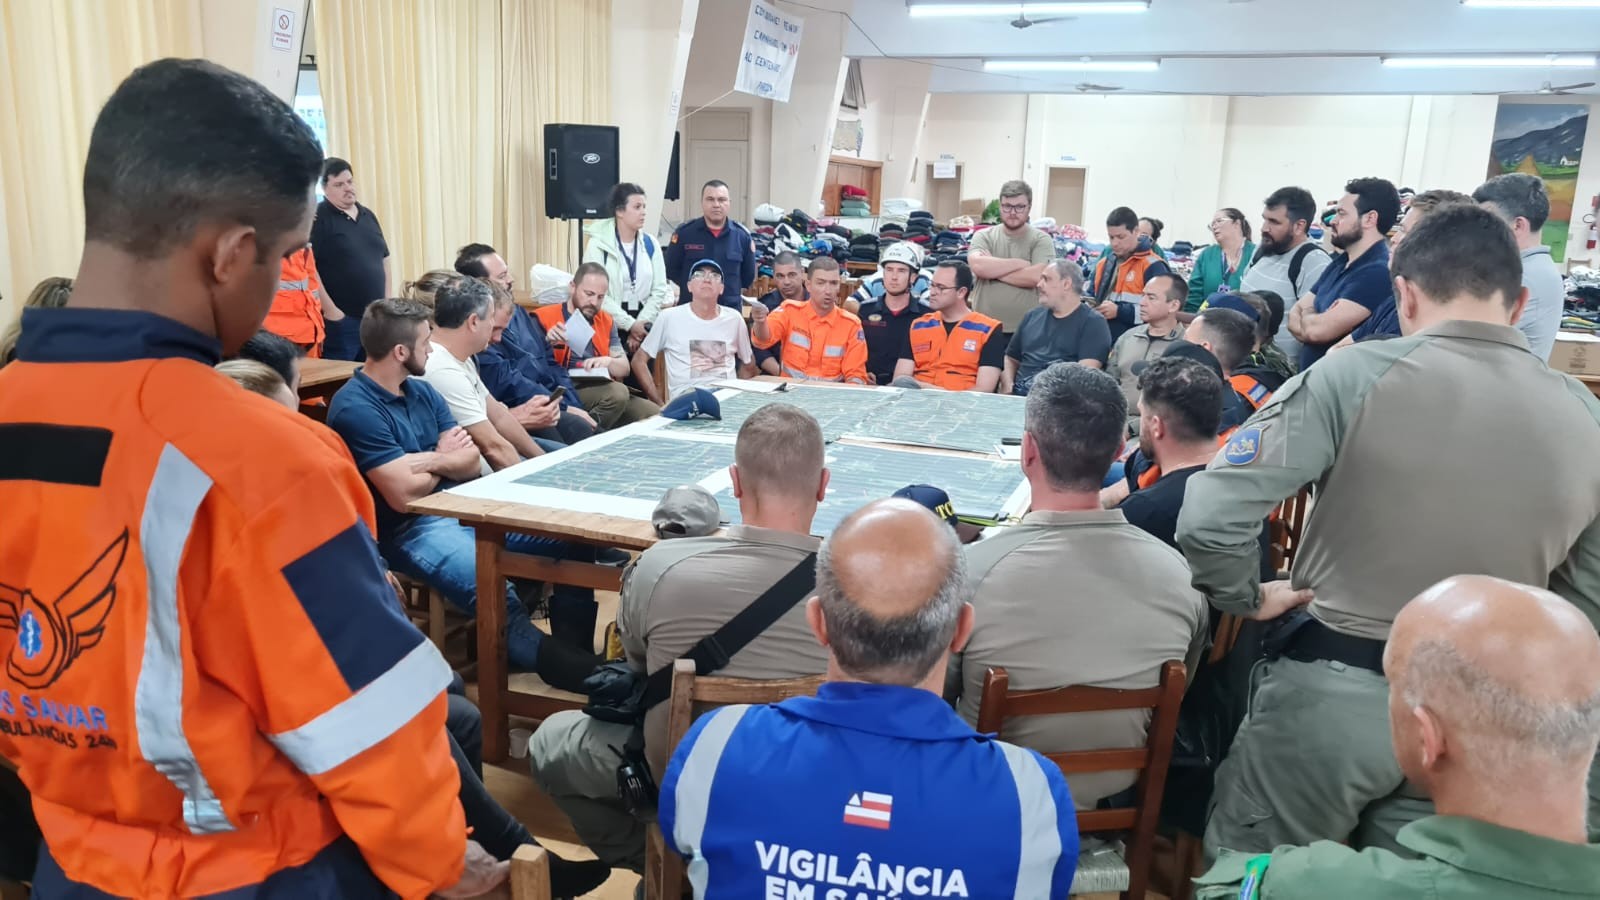 Equipe de saúde e resgate da Bahia usou expertise com enchentes em 2021 para atuar no Rio Grande do Sul